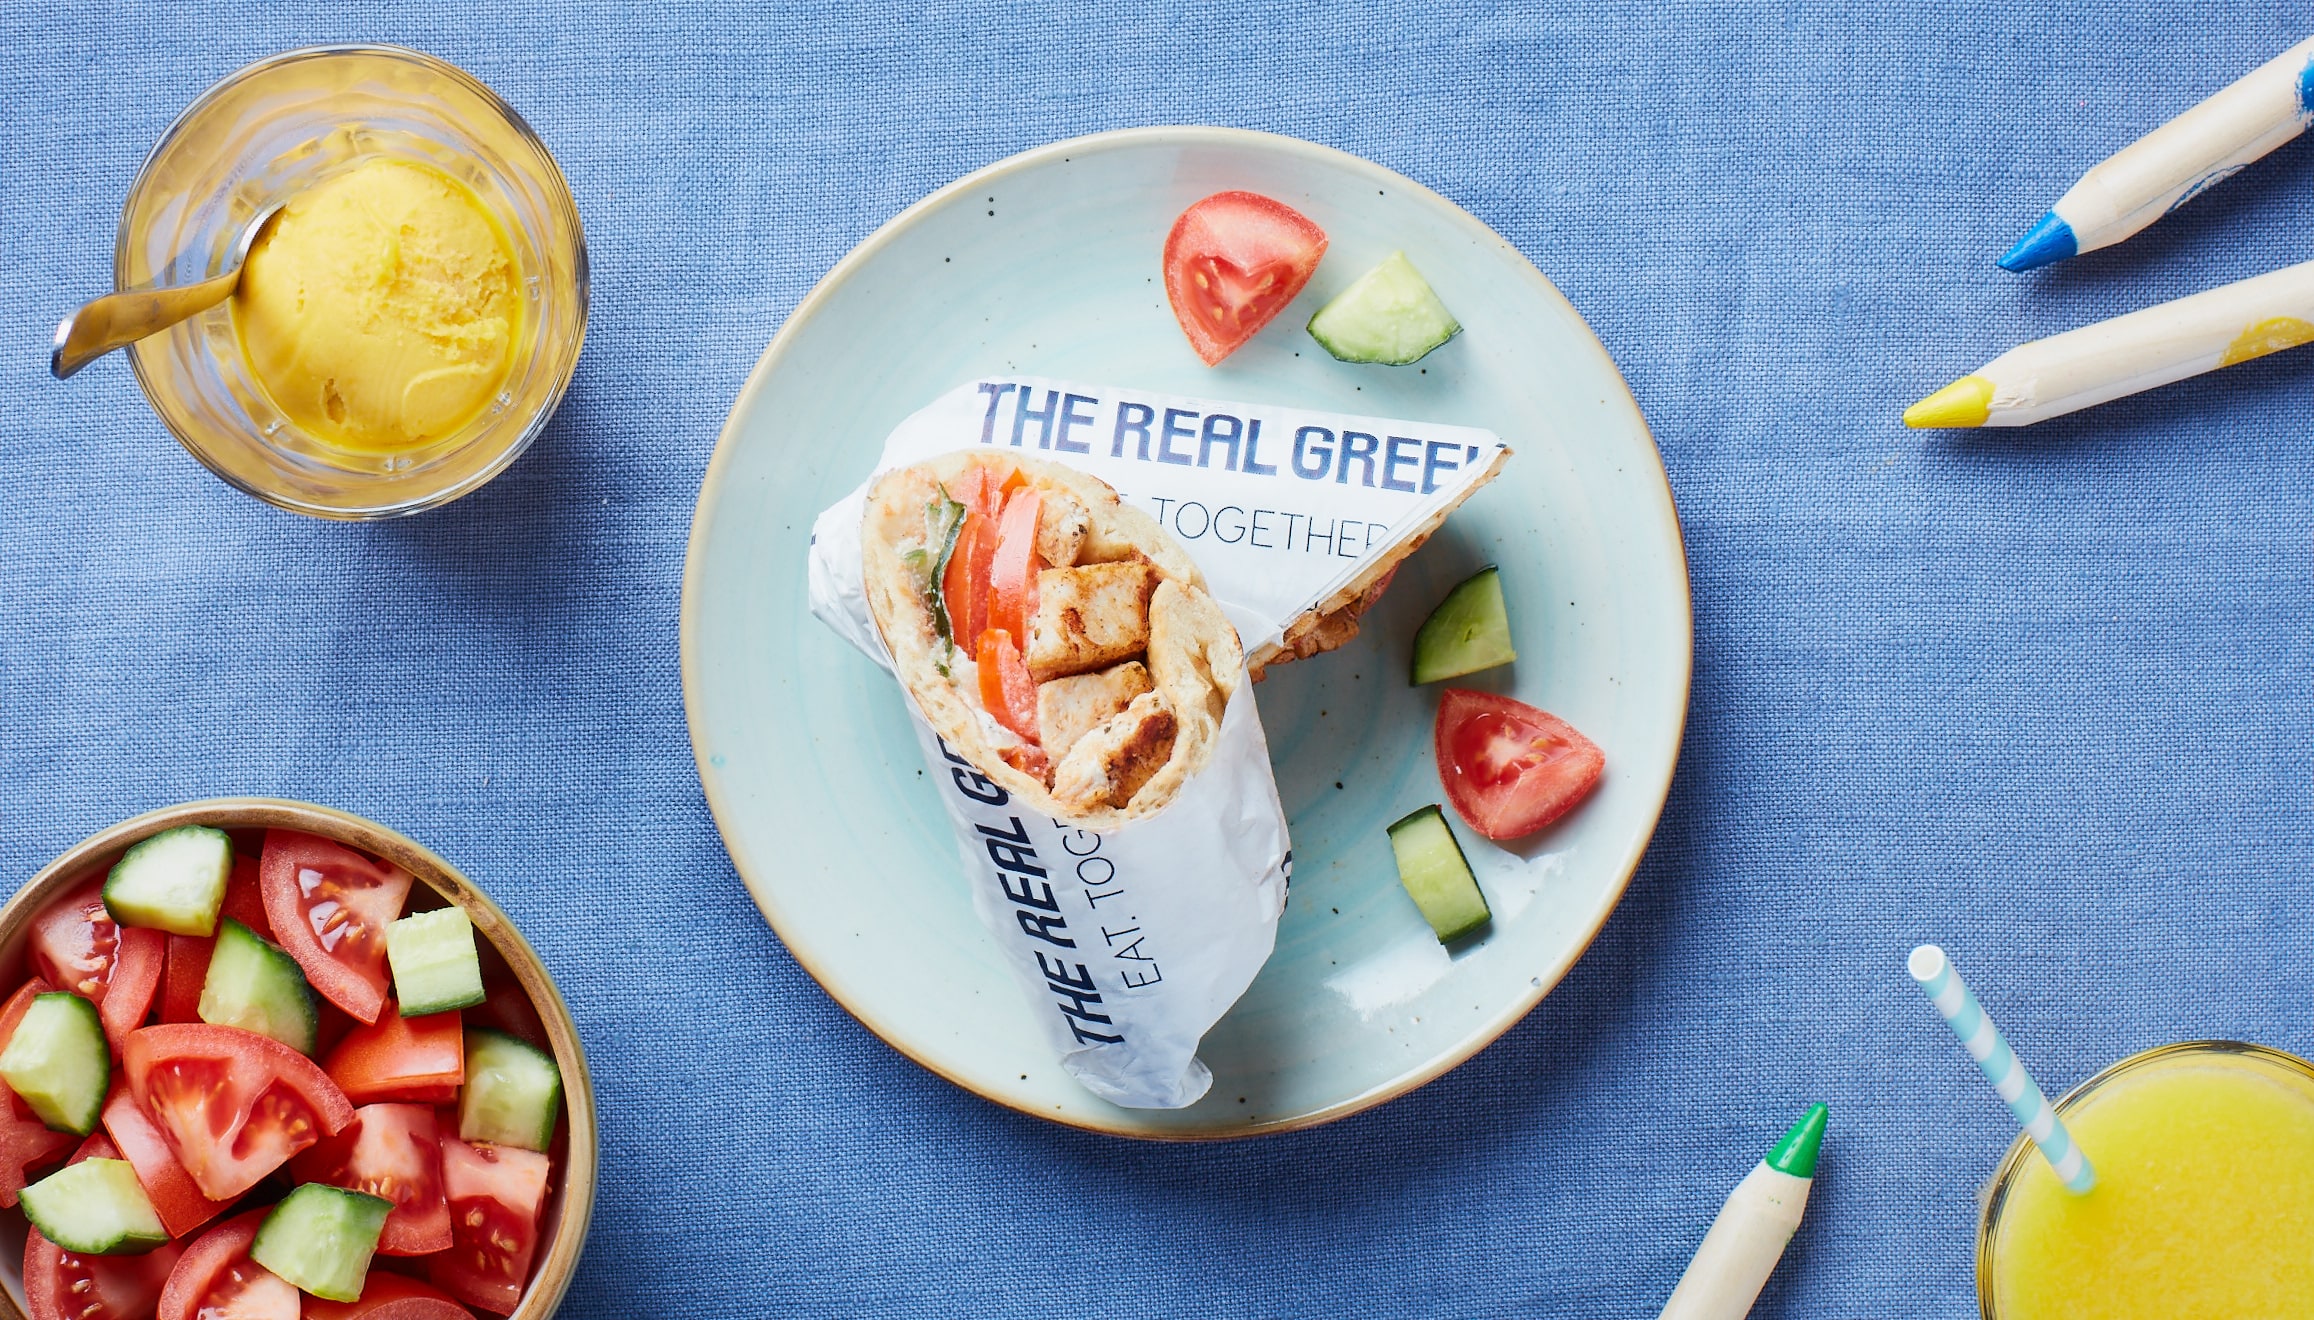 The Real Greek - Greek Food & Ingredients - Westfield